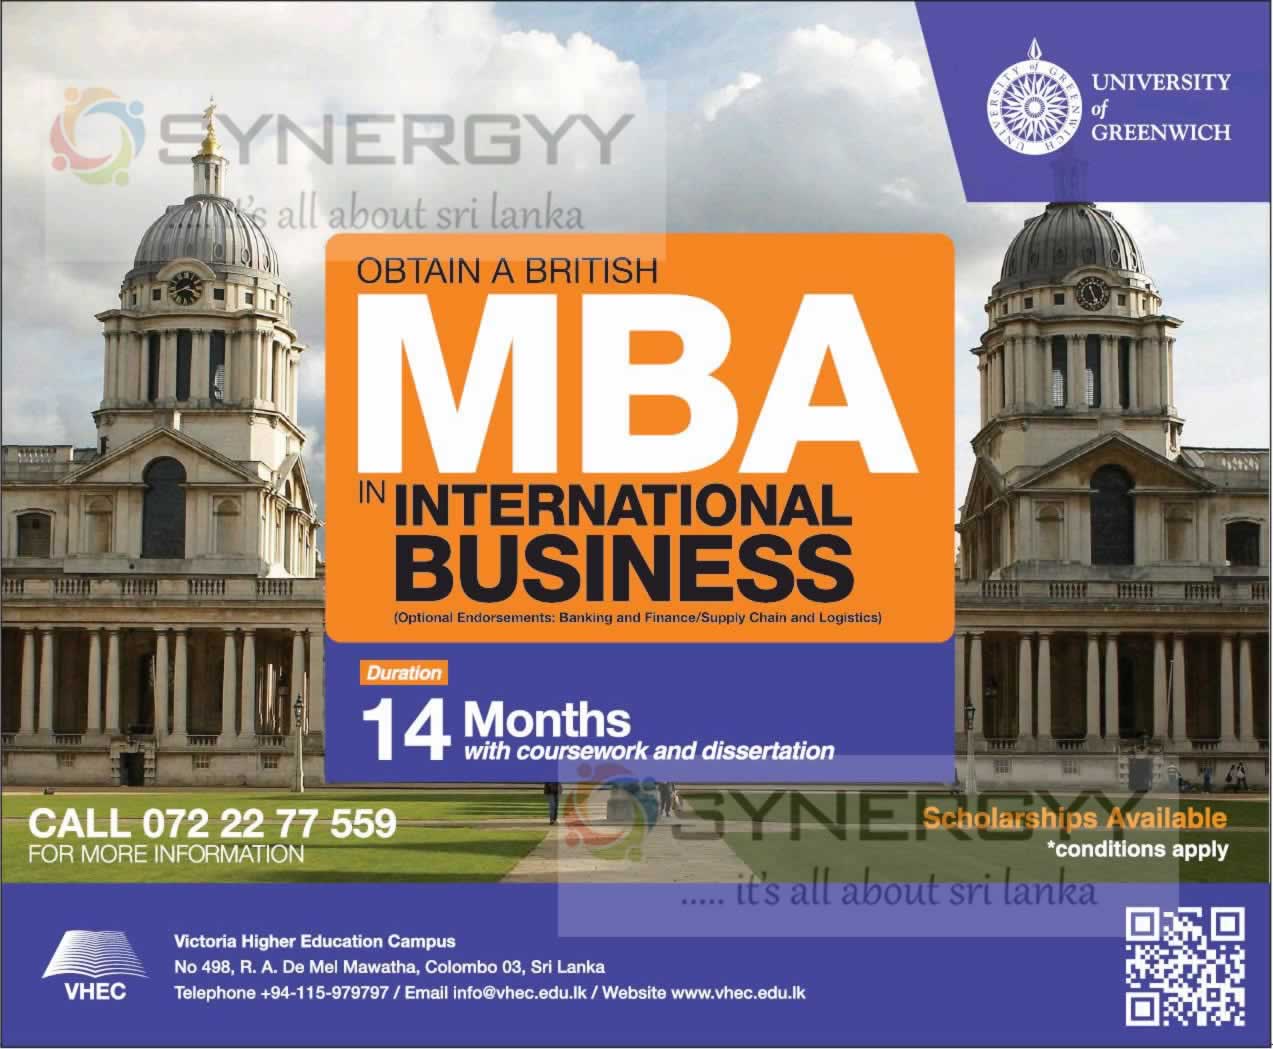 University of Greenwich MBA in Sri Lanka